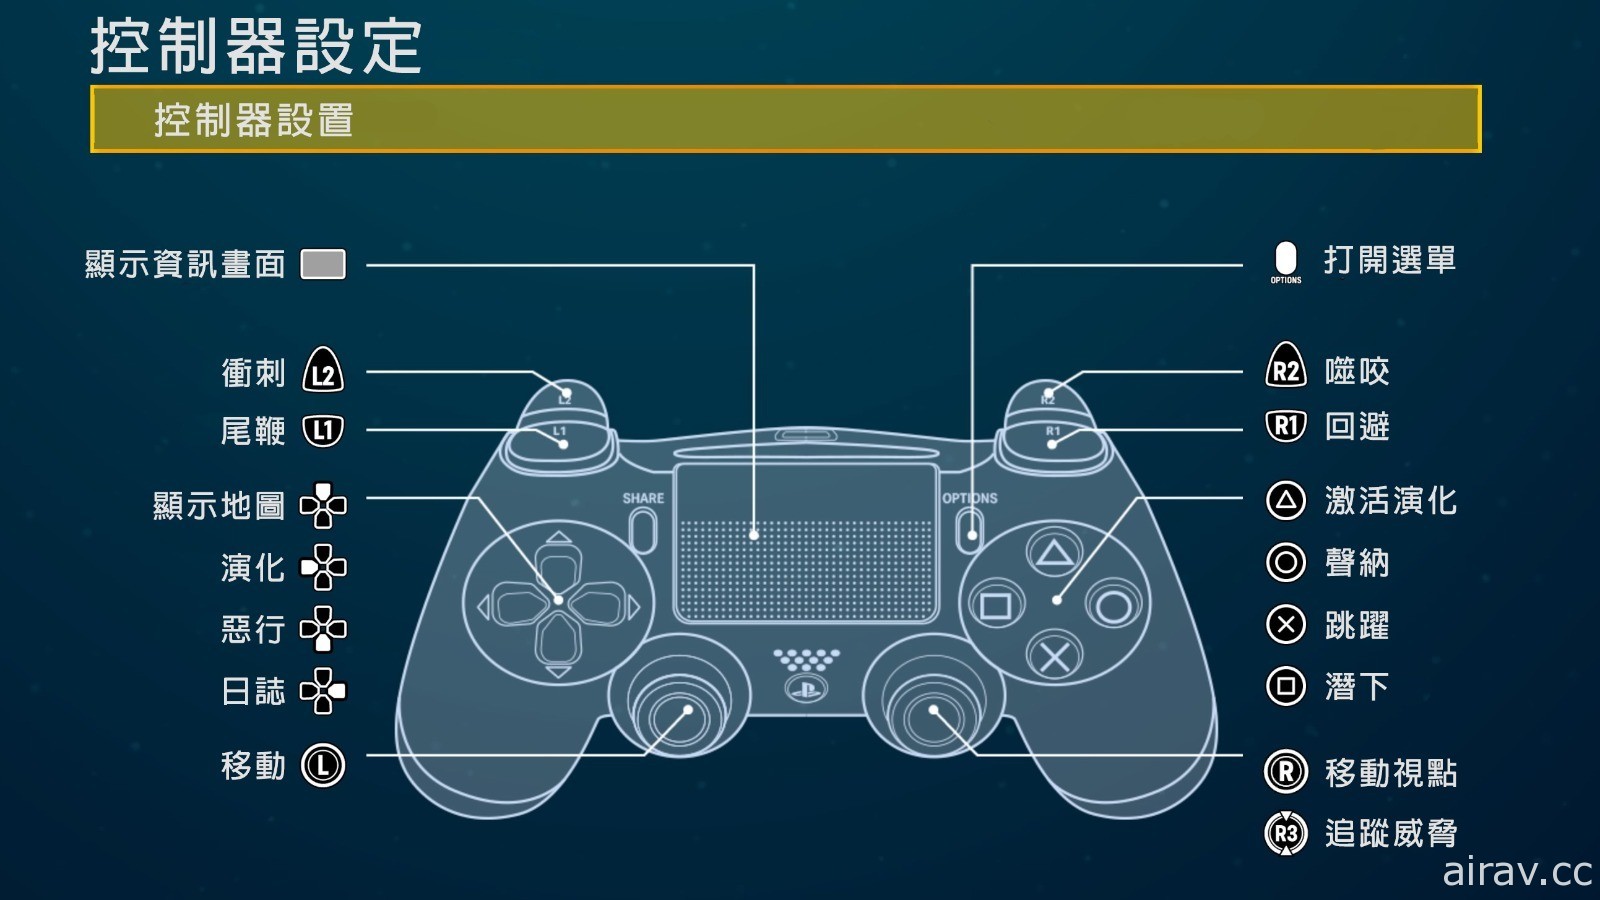 《食人鲨 Maneater》公开中文版开发者日记 加码 PS5 及 PS4 版预购特典